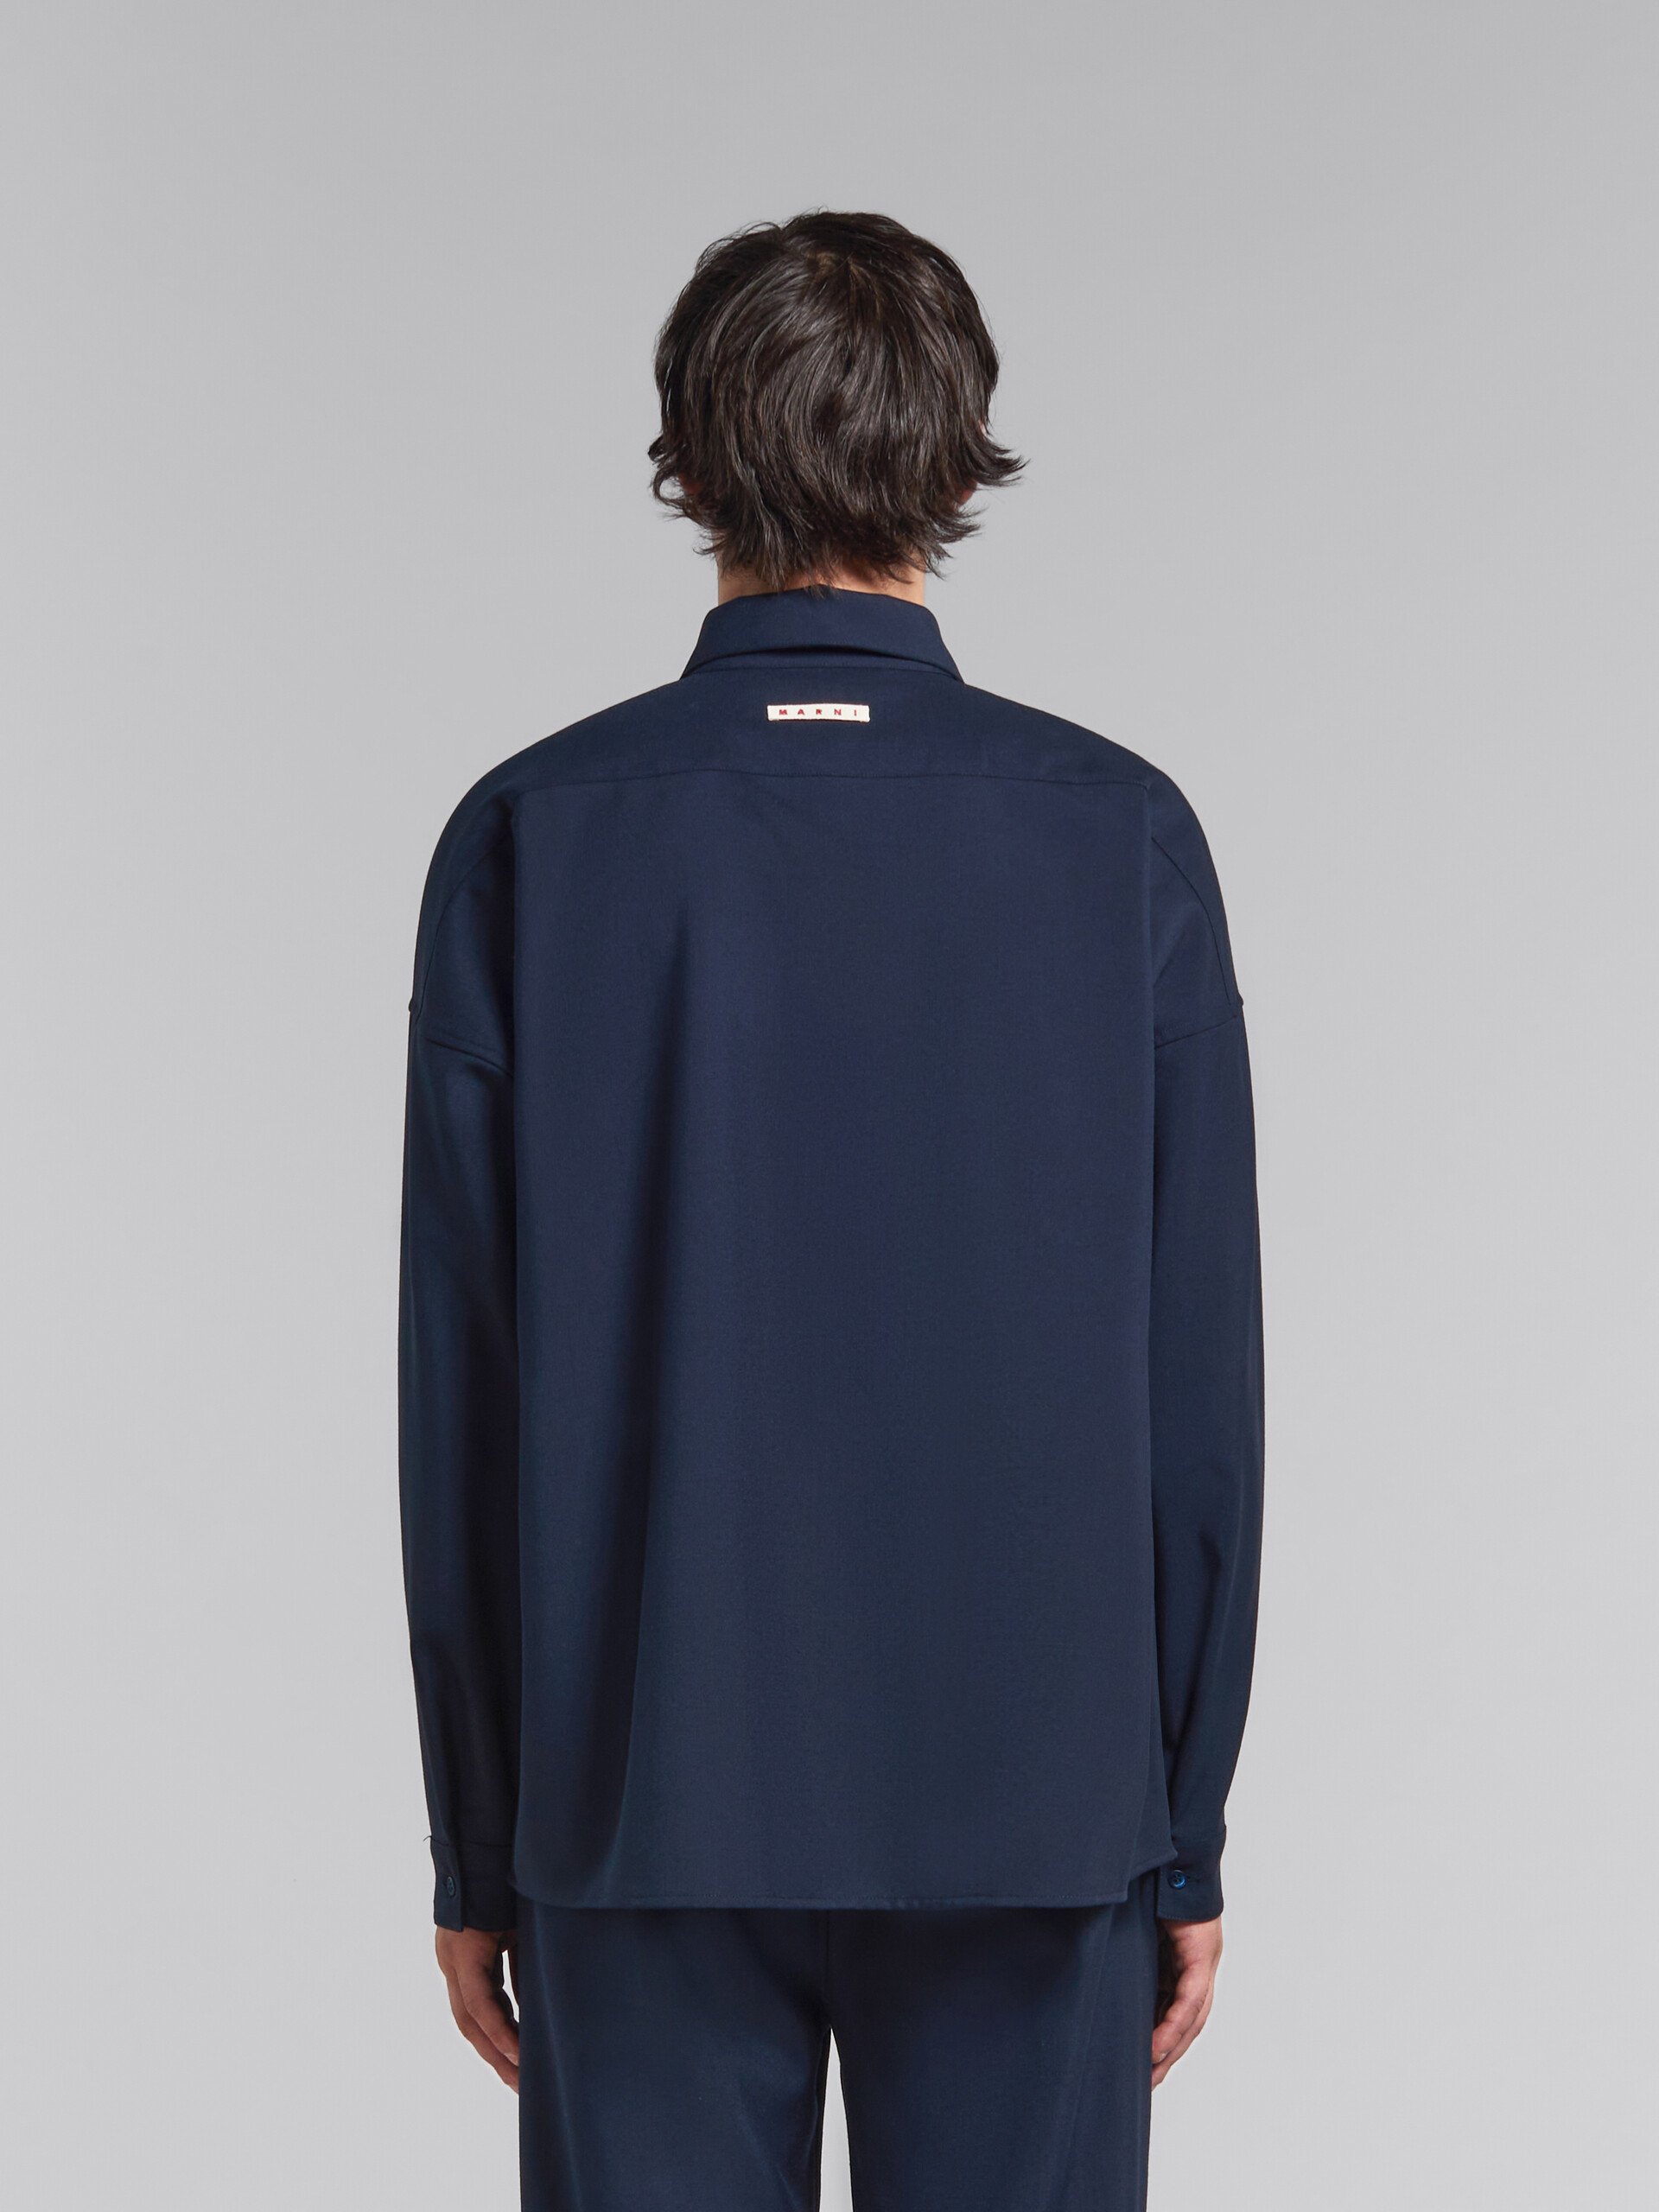 Camicia a maniche lunghe in fresco lana blu scuro - Camicie - Image 3